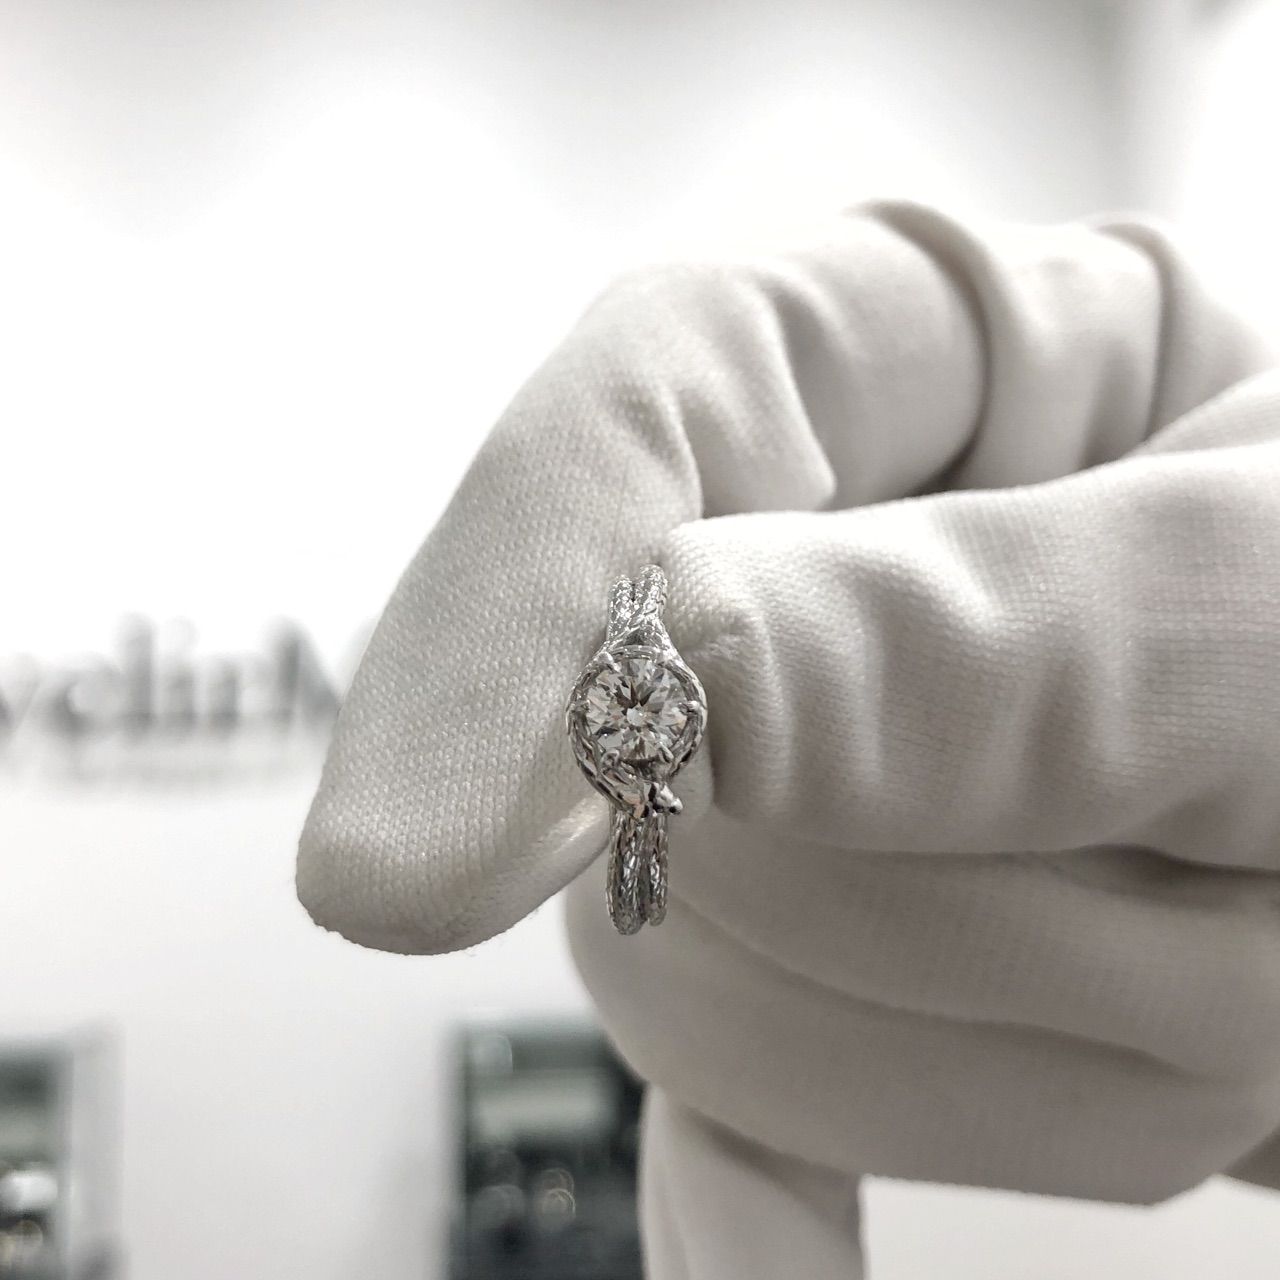 Помолвочное кольцо со змеей обвивающей бриллиант